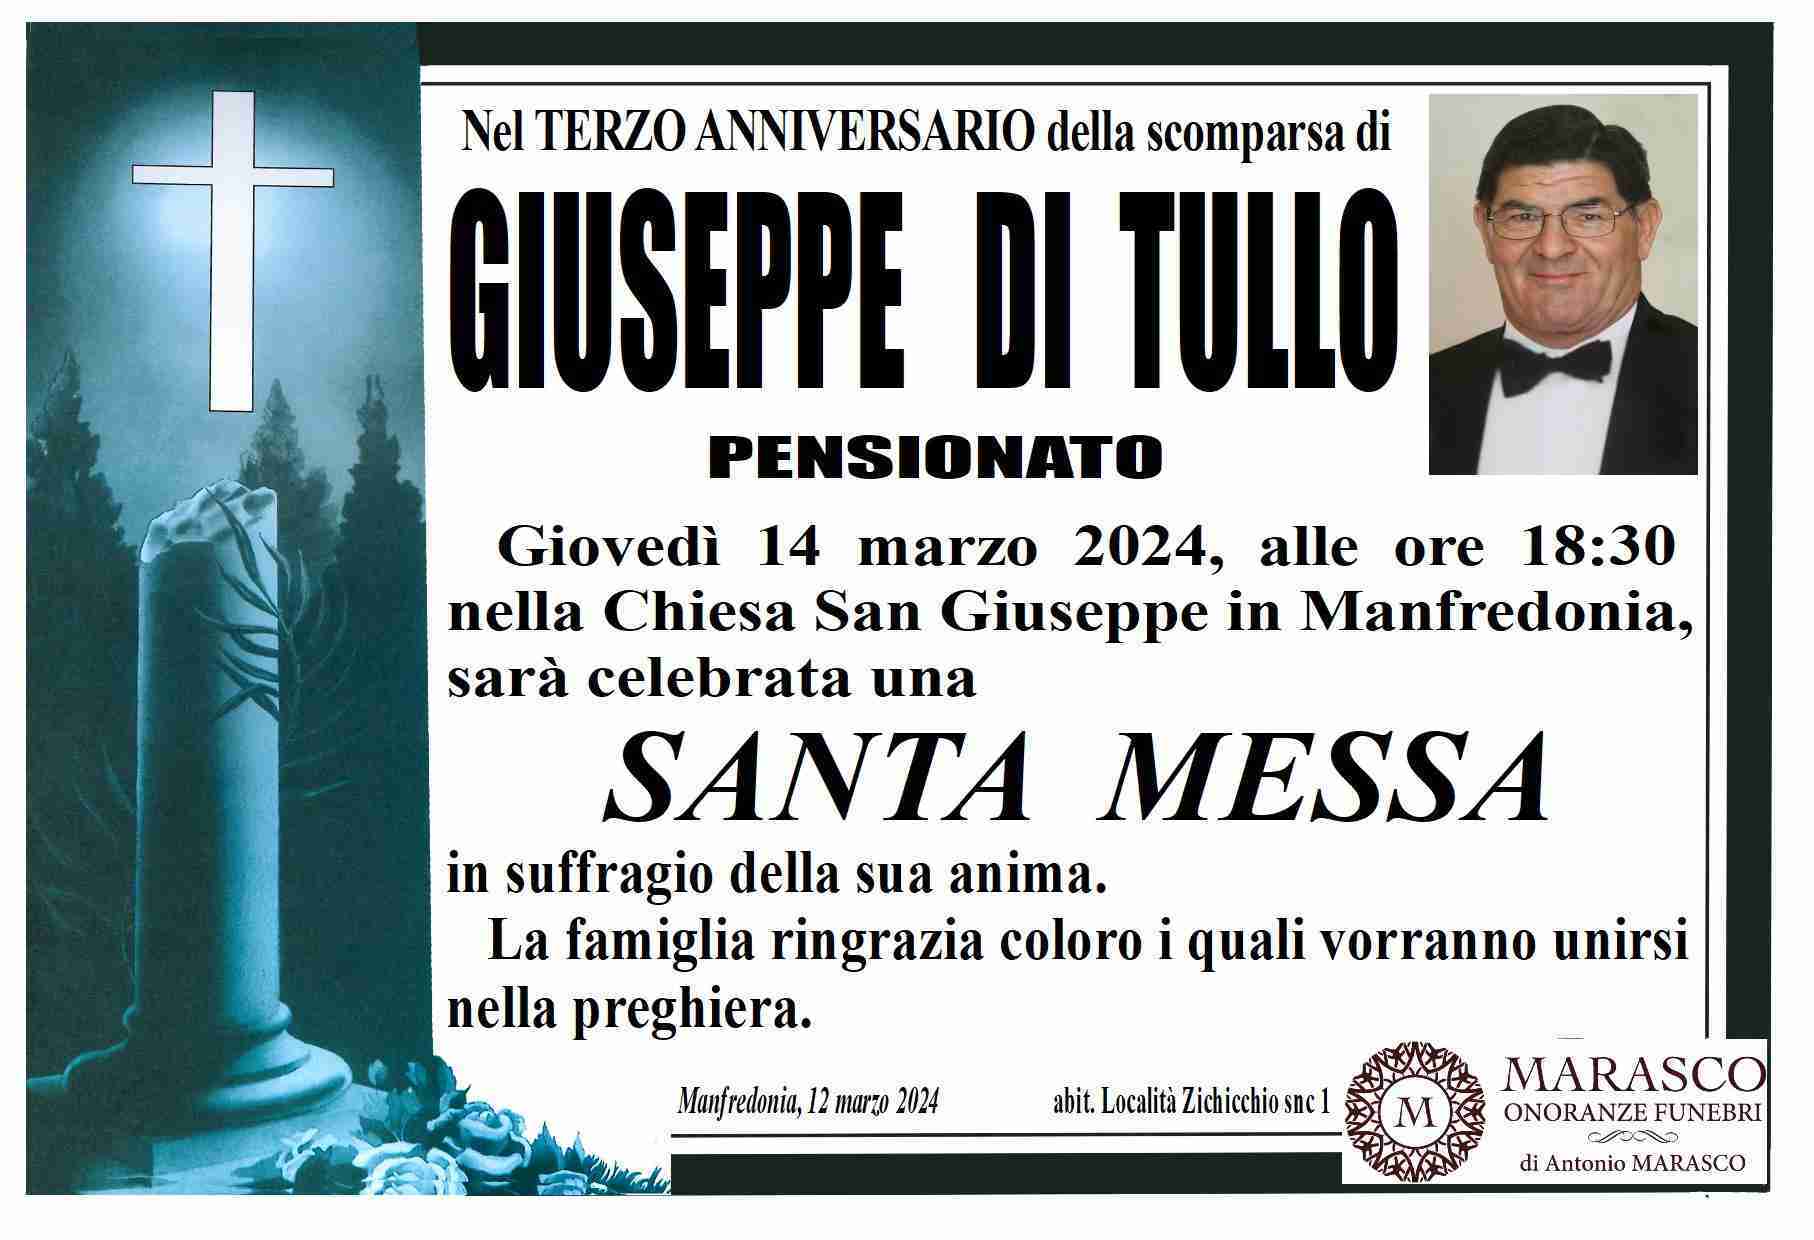 Giuseppe Di Tullo